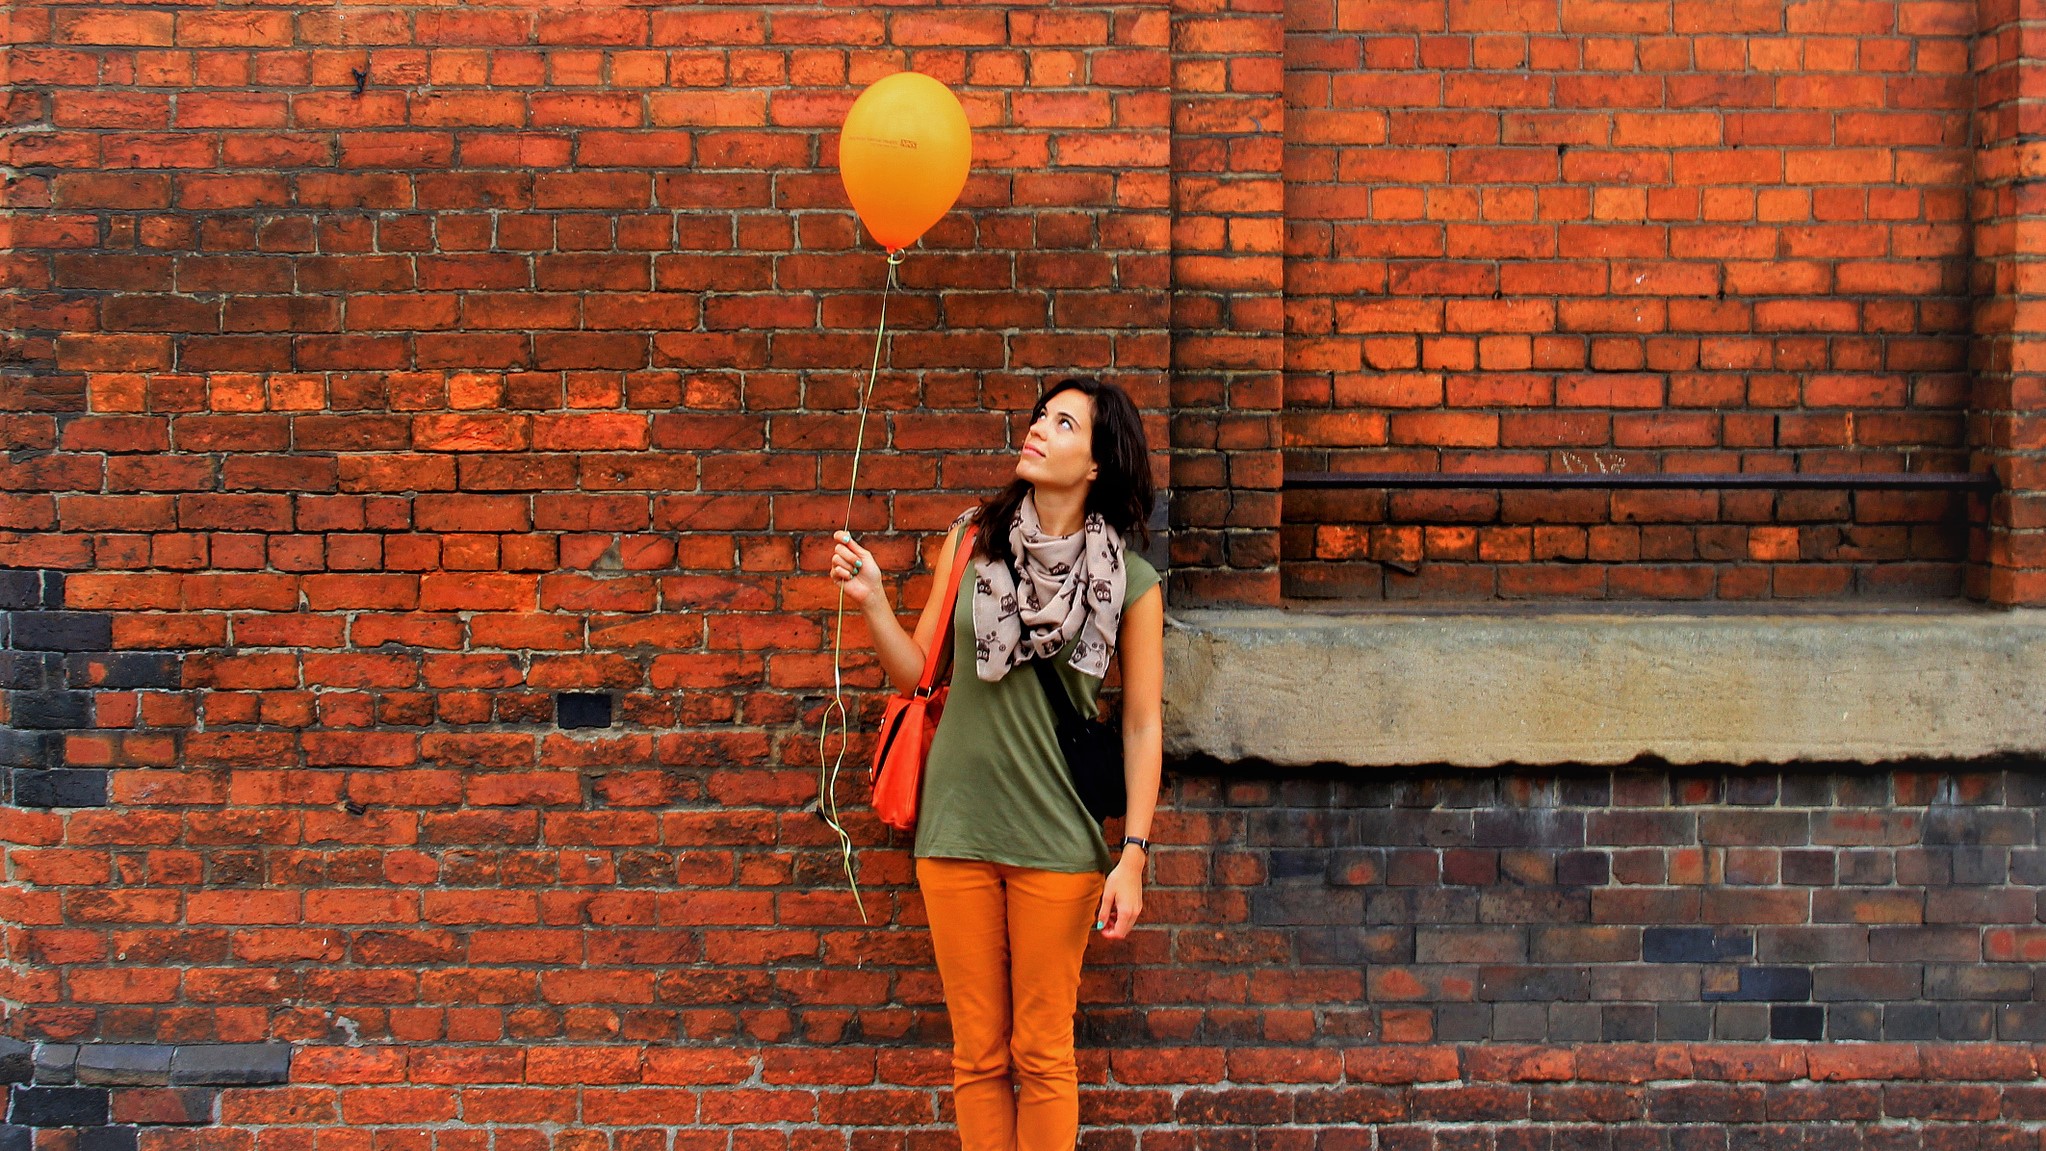 Een jonge vrouw staat voor een muur en kijkt naar een ballon, die ze aan een touwtje vast heeft. Ze ziet er verlegen en rustig uit; niet als een durfal.